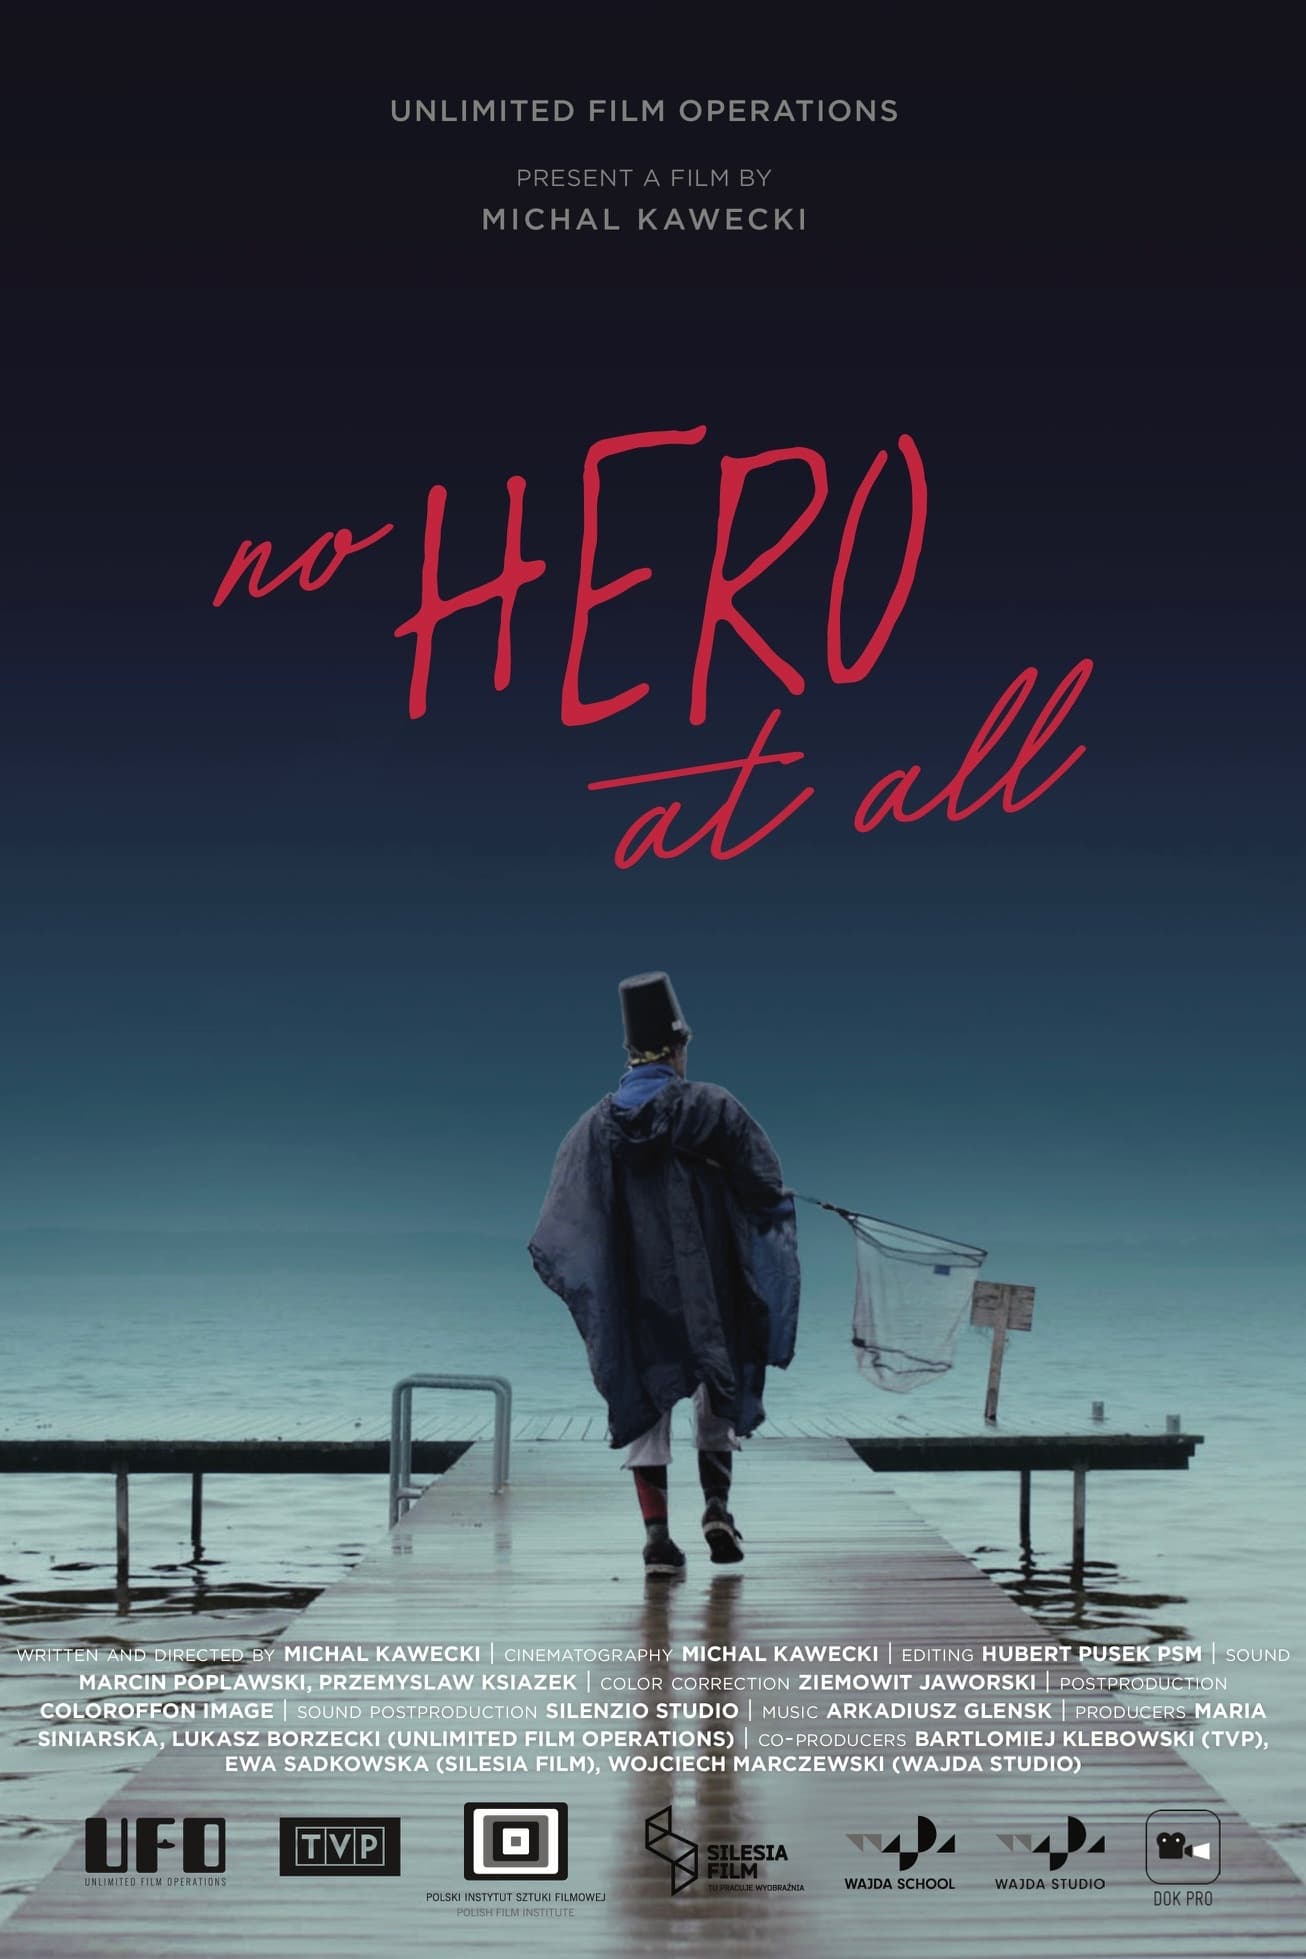 No Hero At All